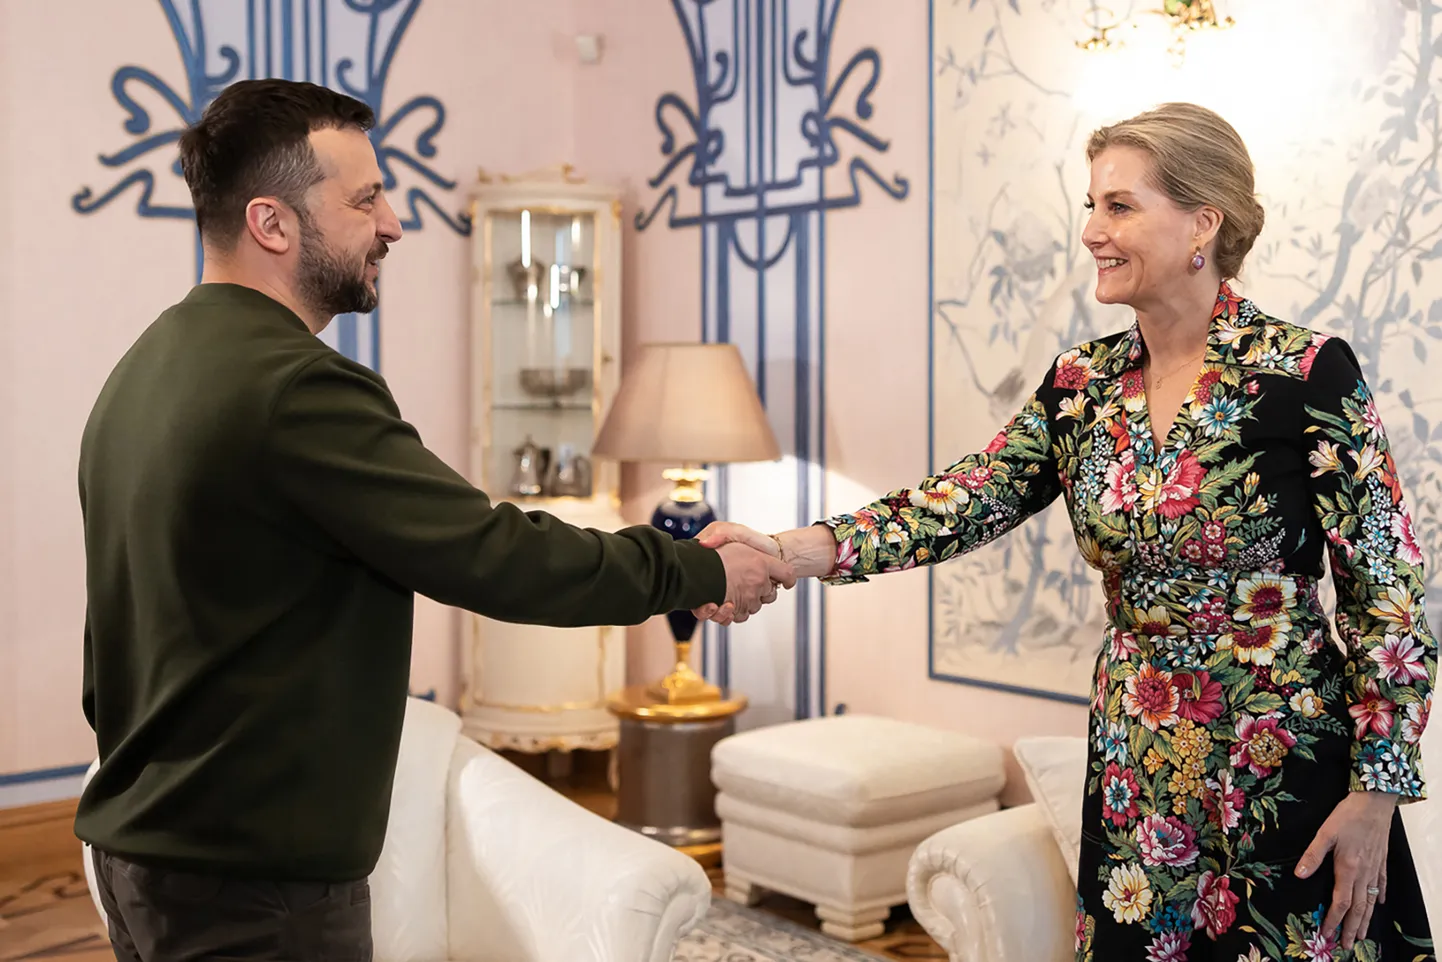 Briti Edinburghi hertsoginna Sophie külastas 29. aprillil Ukrainat, kohtudes nii presidendi Volodõmõr Zelenskõi kui esileedi Olena Zelenskaga (ei ole fotol).